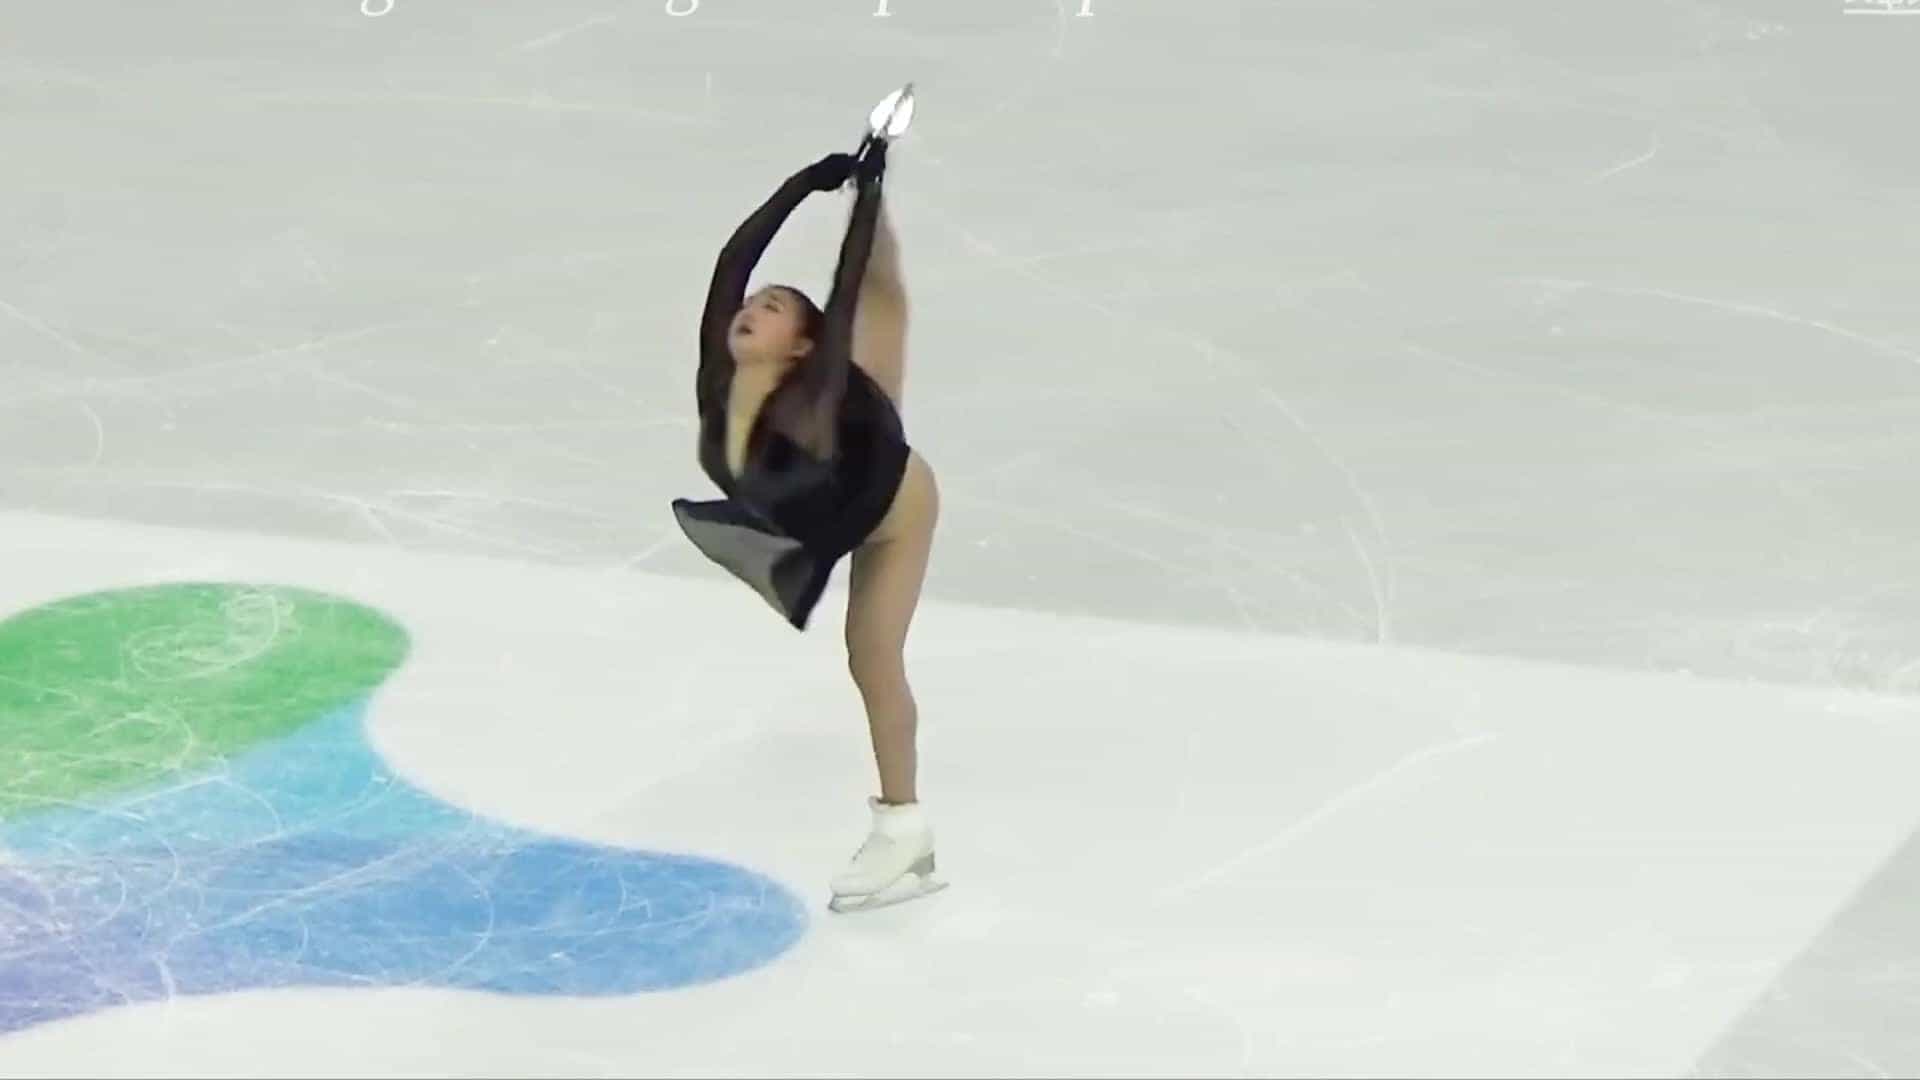 Kaori Sakamoto - Japanese figure skater